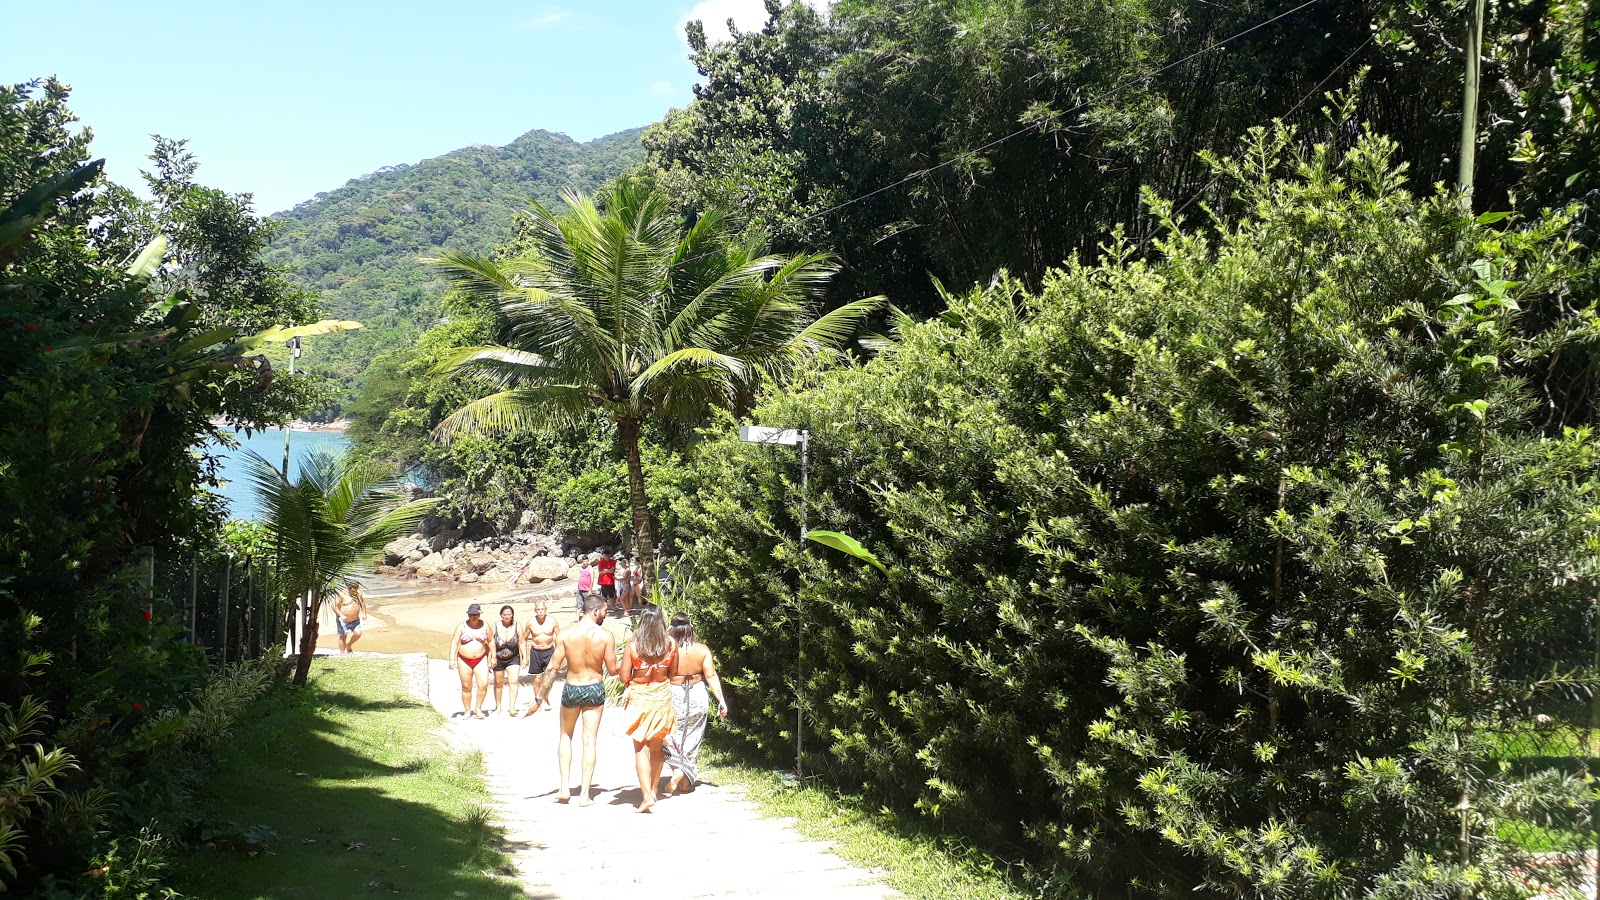 Foto af Praia da Santa Rita - populært sted blandt afslapningskendere